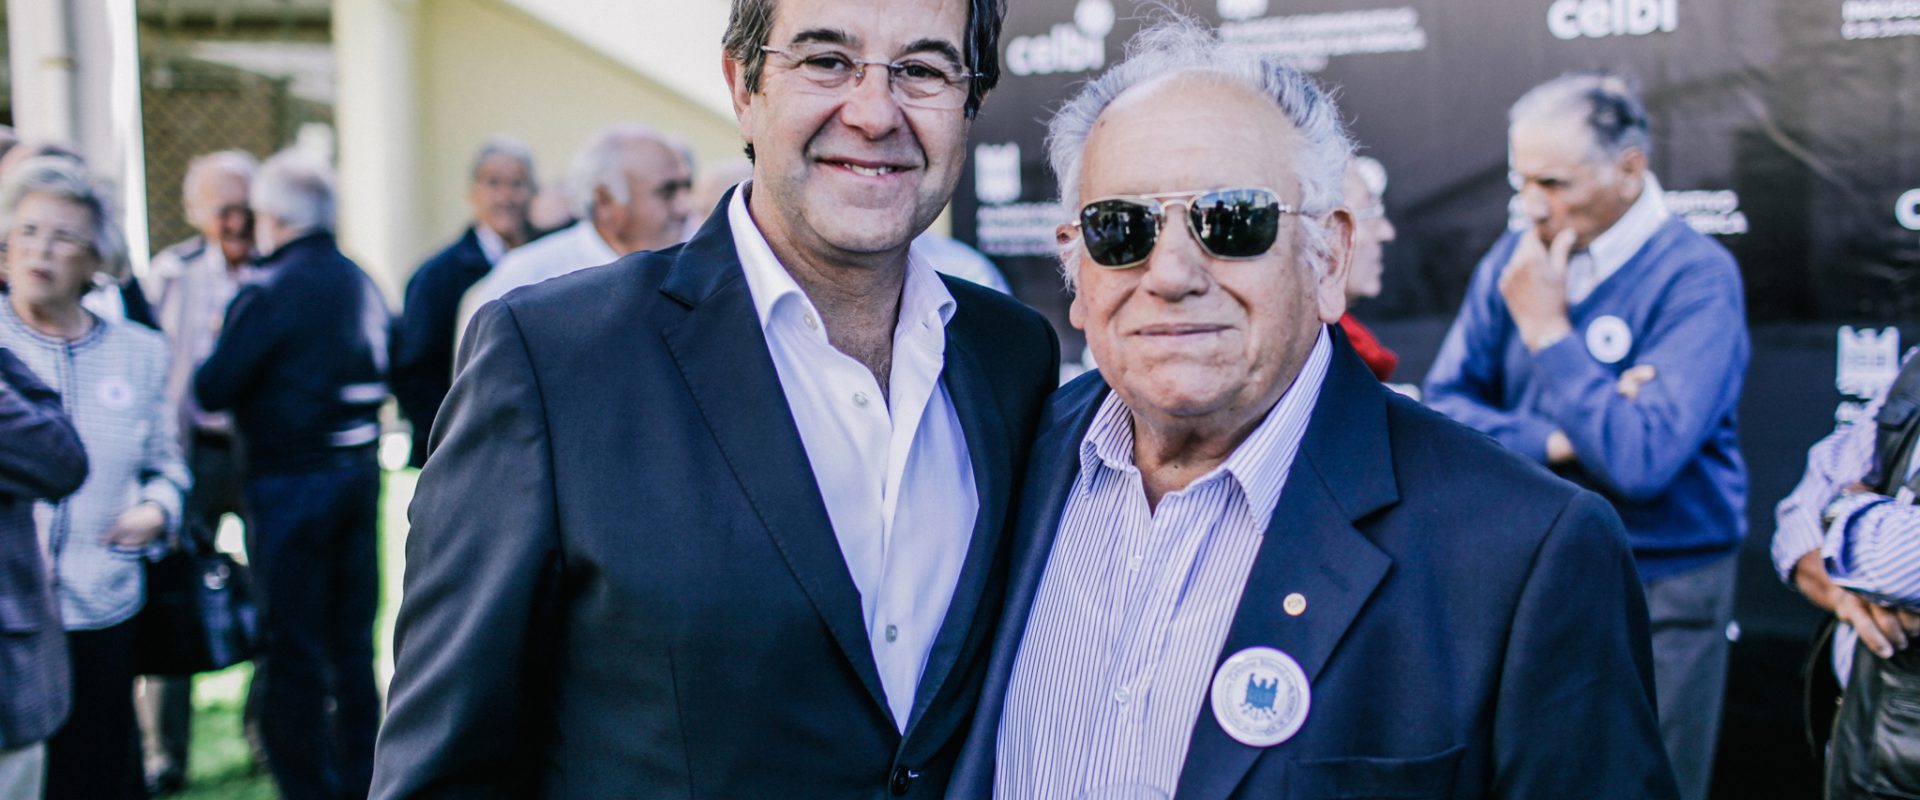 Nogueira Santos and José Gonçalves, former worker at Celbi